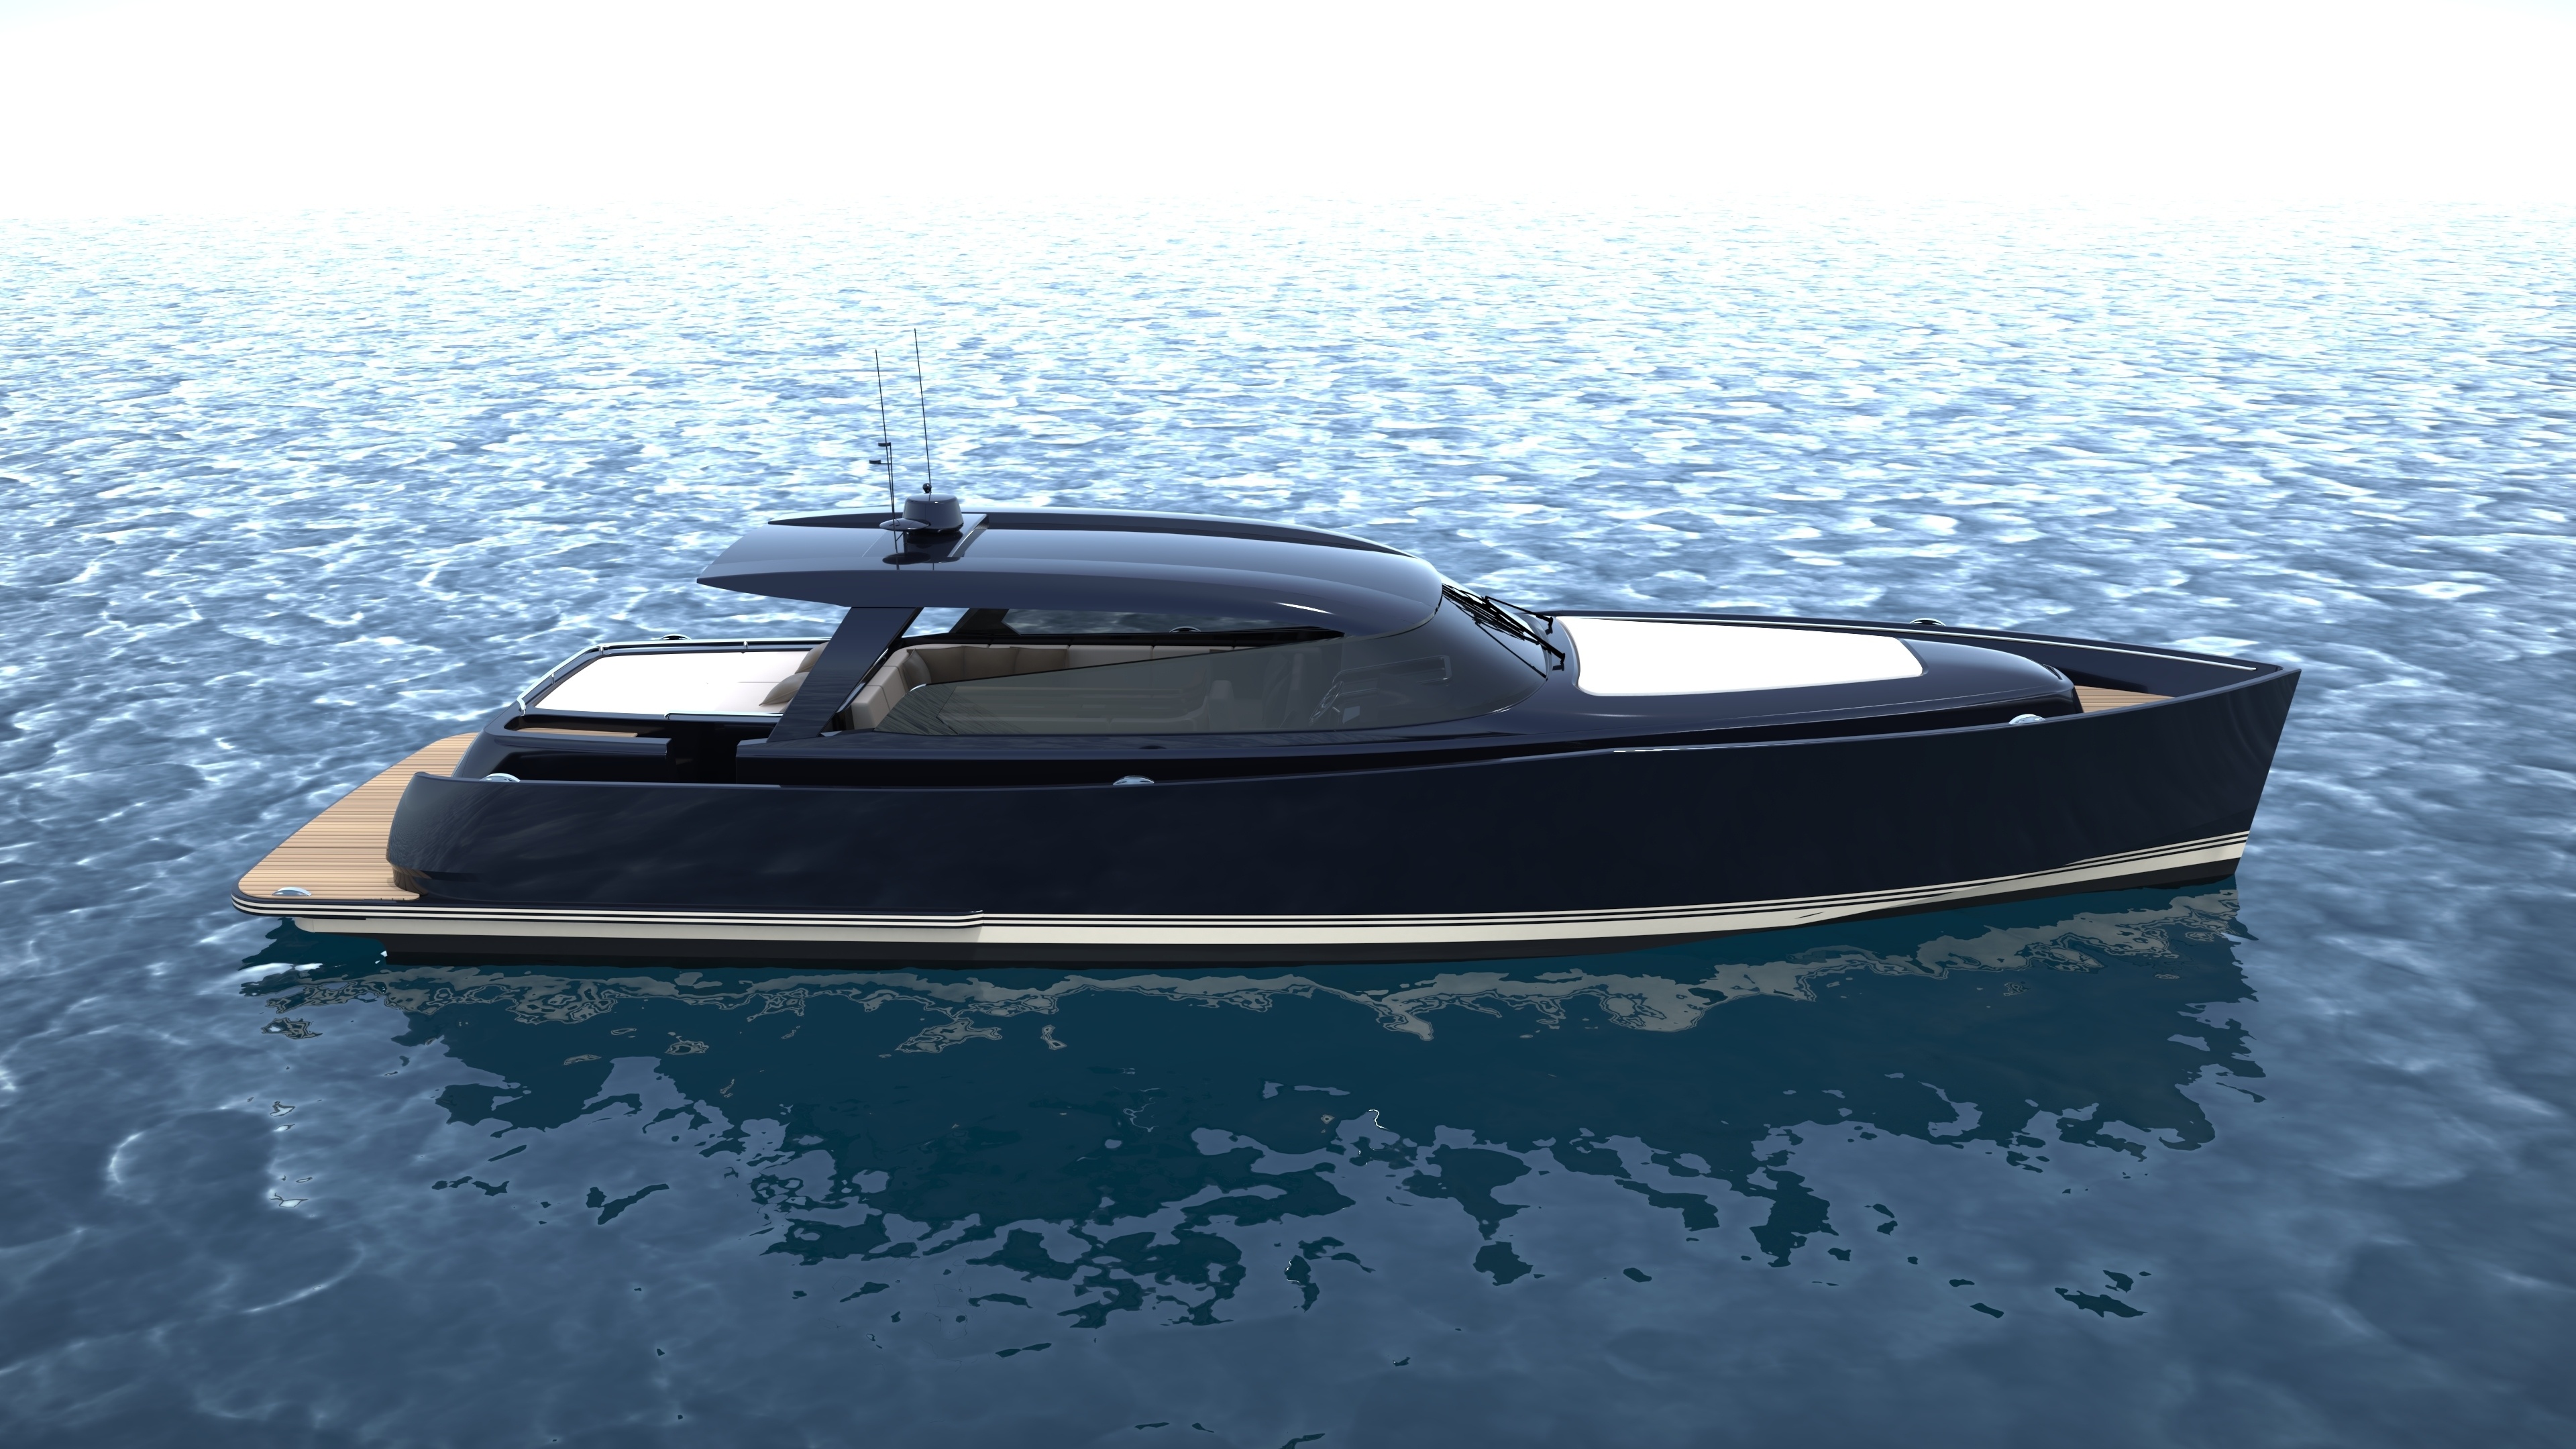 Motorboat: Contest 52MC T-top, Inboard engine. 3840x2160 4K Wallpaper.